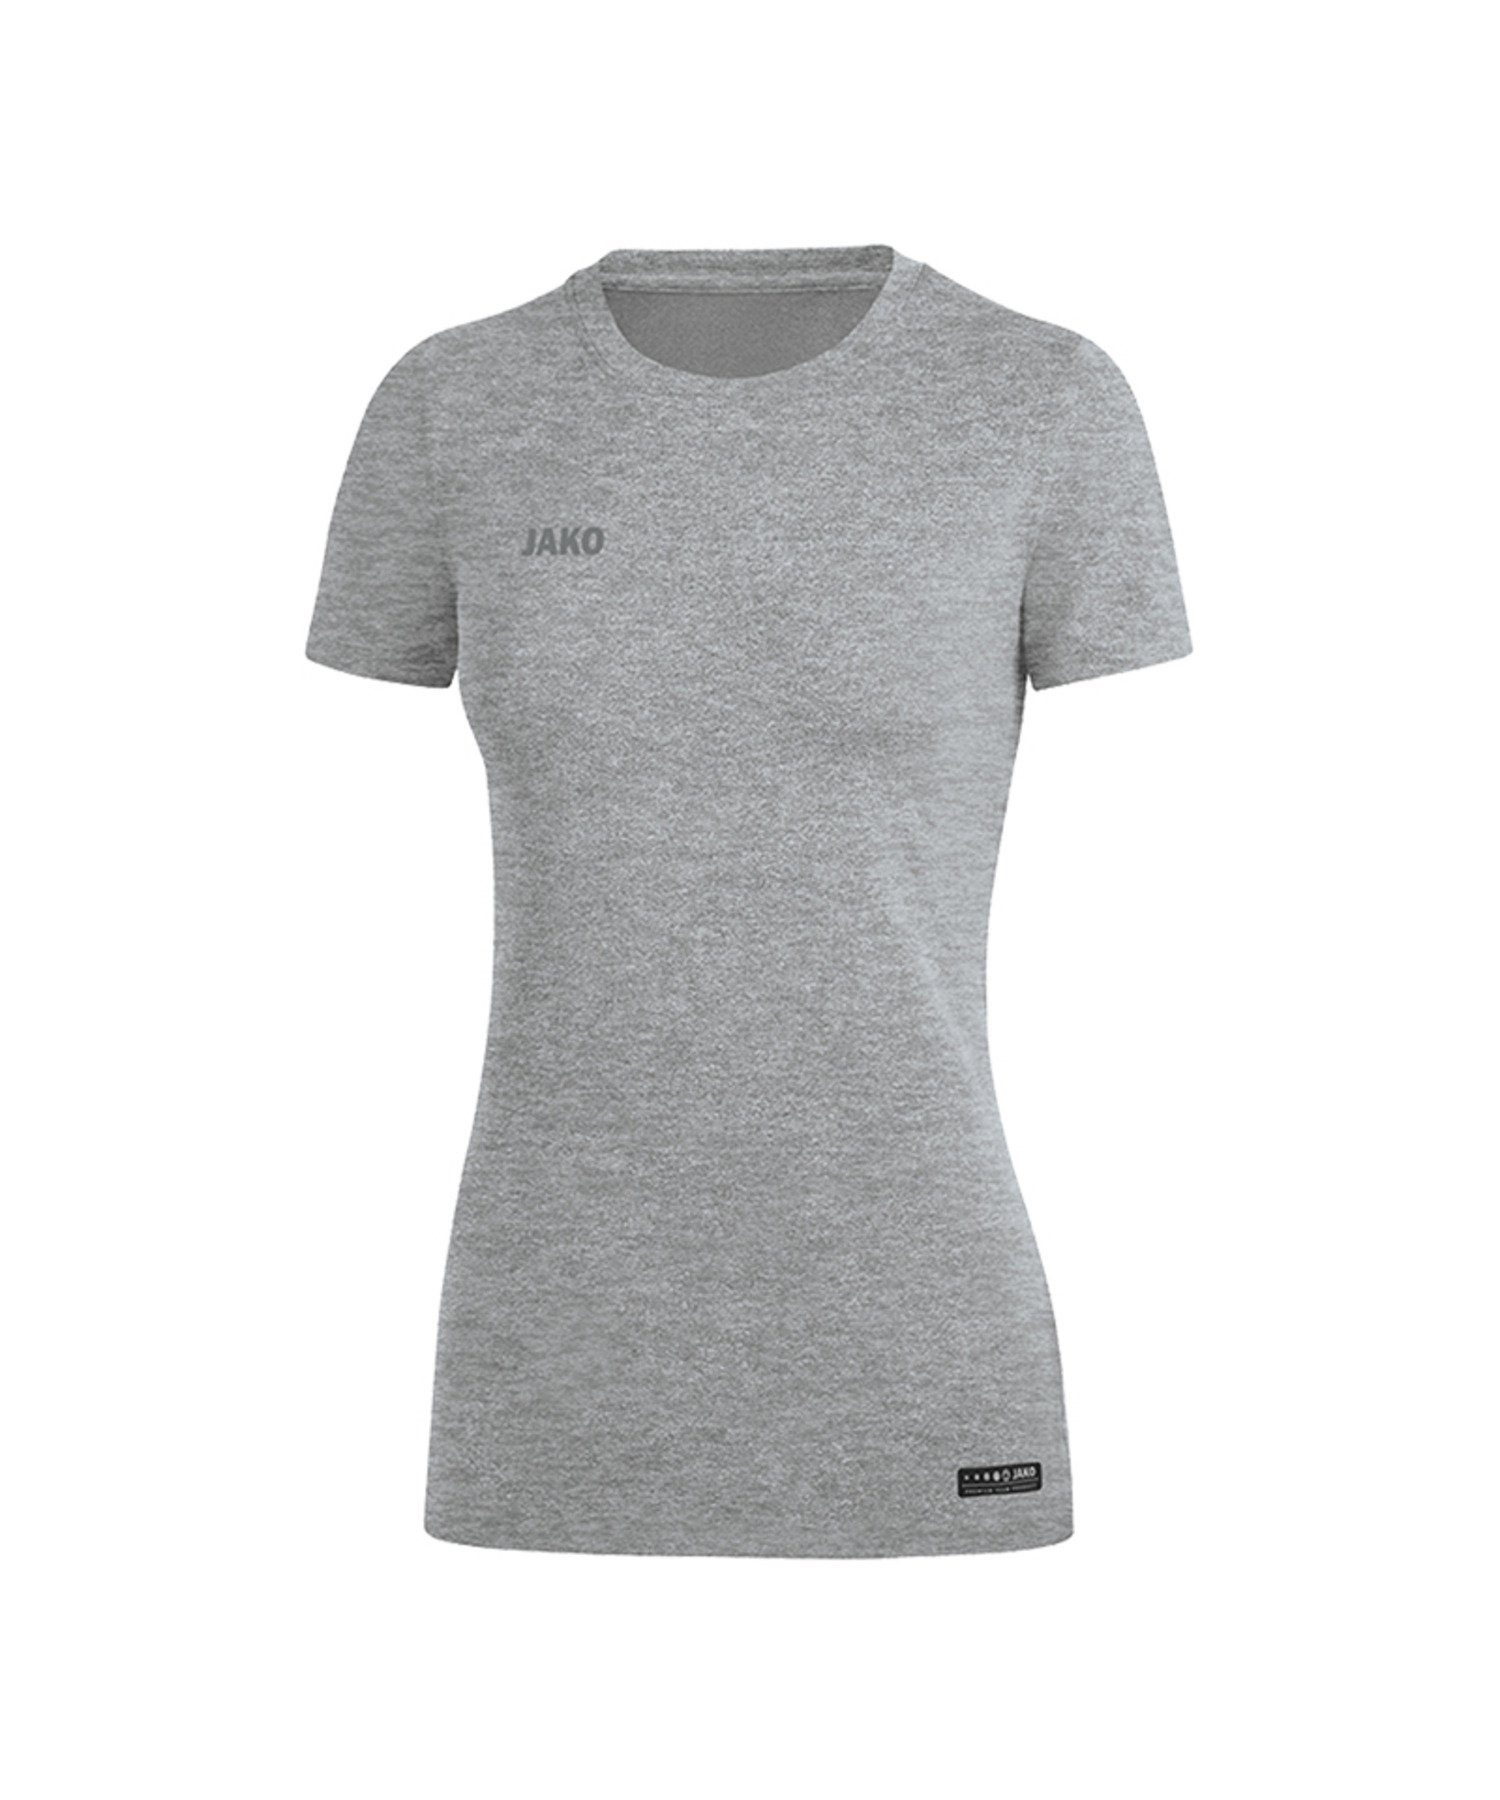 Damen T-Shirt default Grau Basic Premium T-Shirt Jako